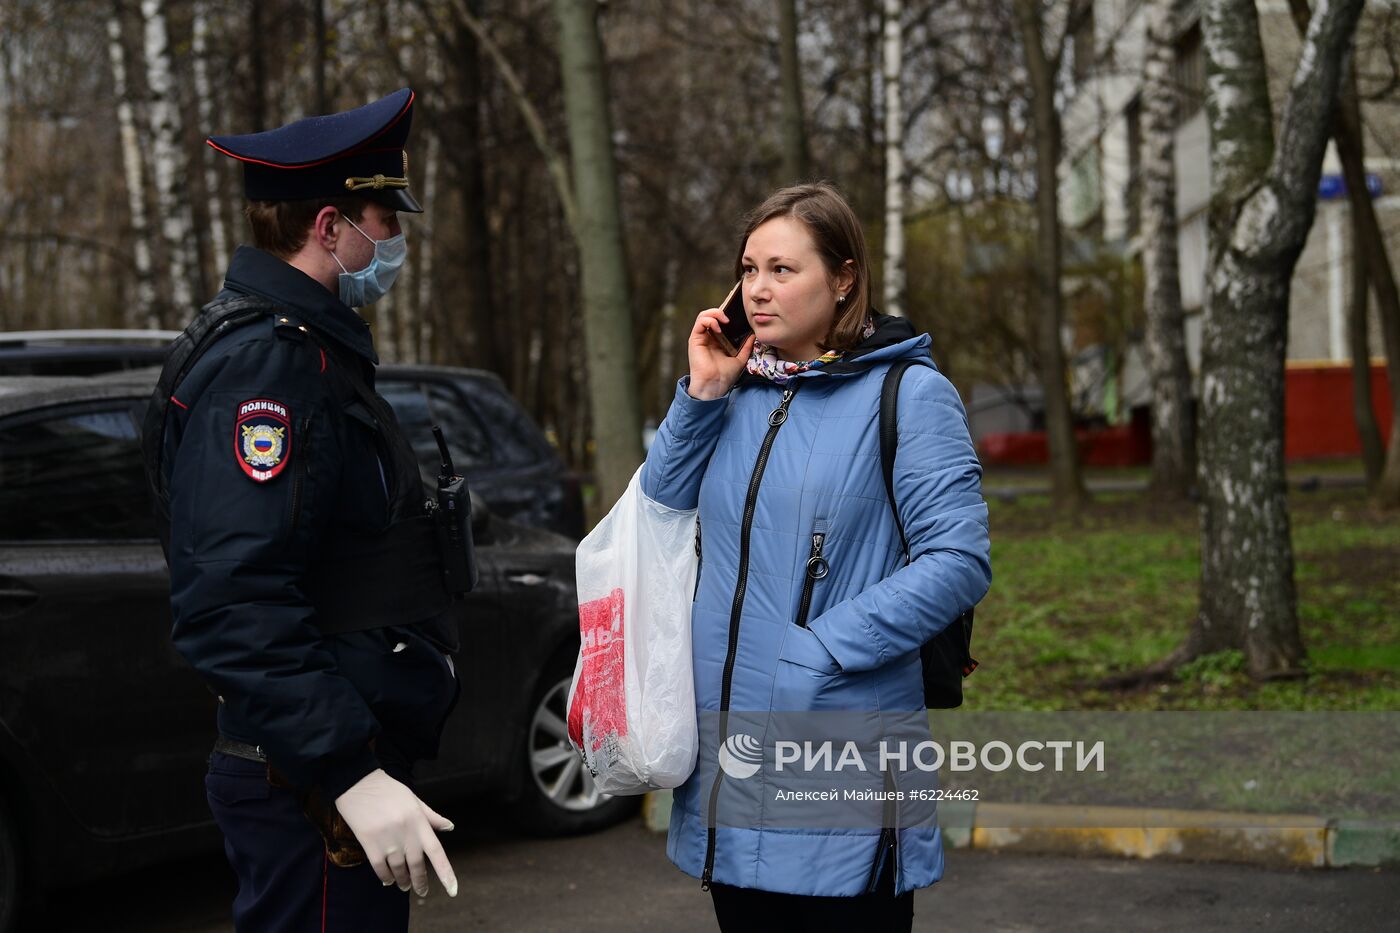 Работа сотрудников полиции в Москве